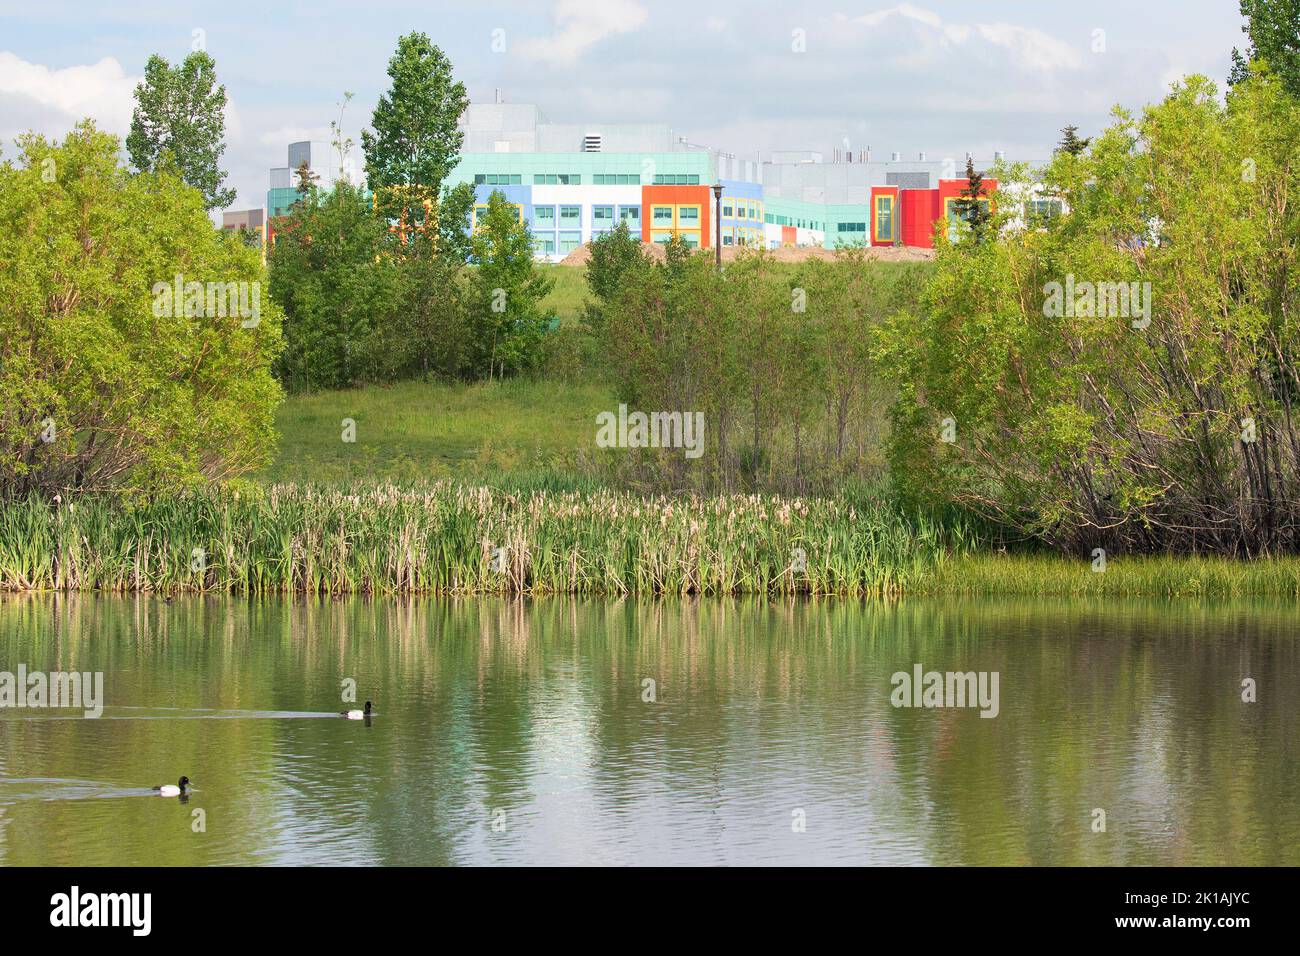 L'étang de la ville construit pour capturer les eaux pluviales, améliorer la qualité de l'eau et prévenir les inondations fournit également un espace vert urbain avec des habitats fauniques de milieux humides Banque D'Images